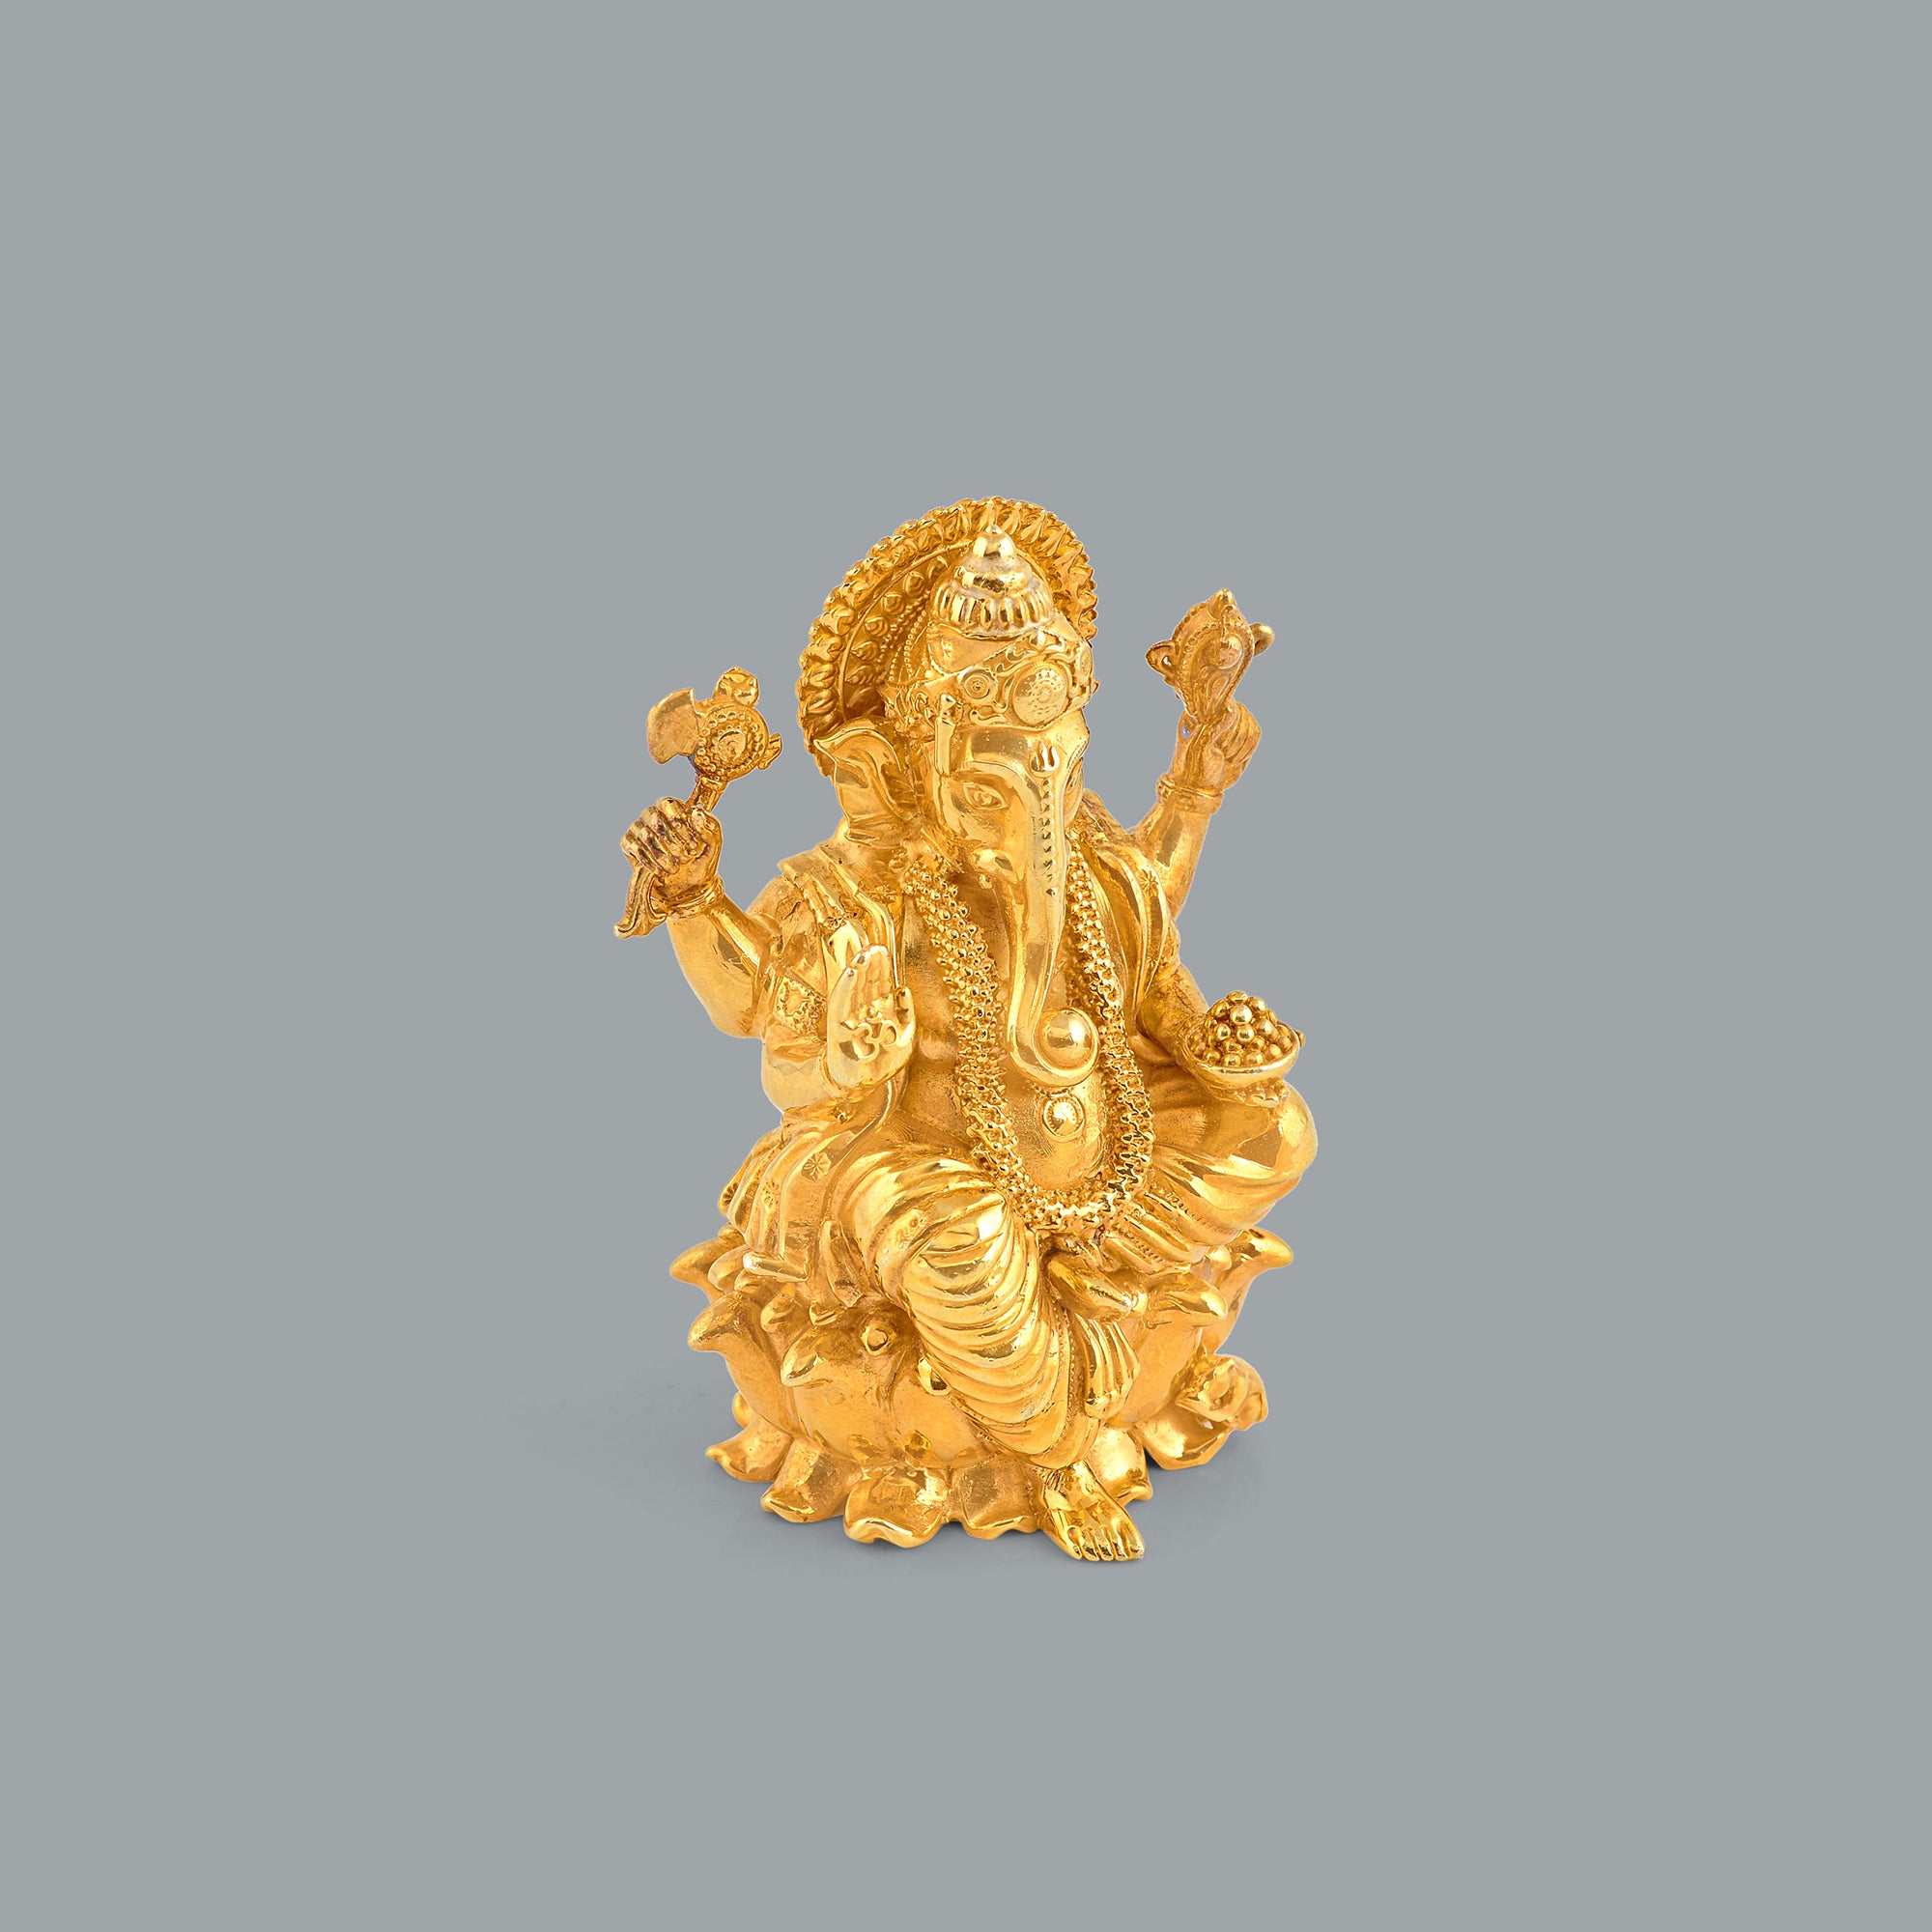 Silver Ganesh Idol in Golden Elegance